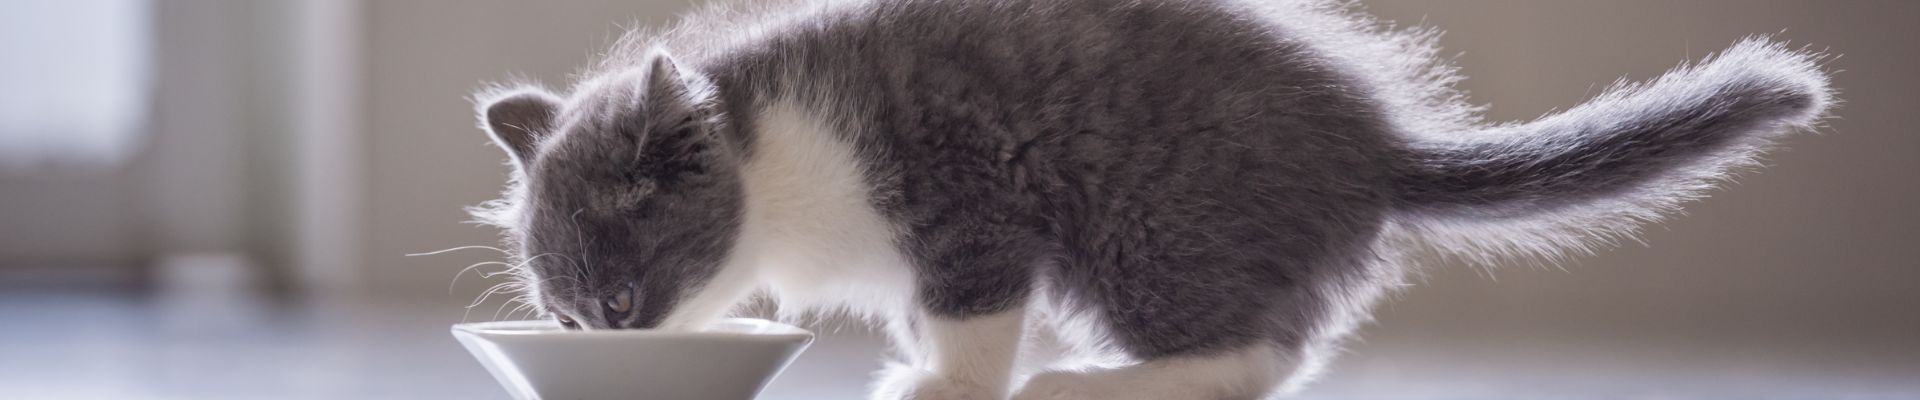 gray kitten eats white bowl banner